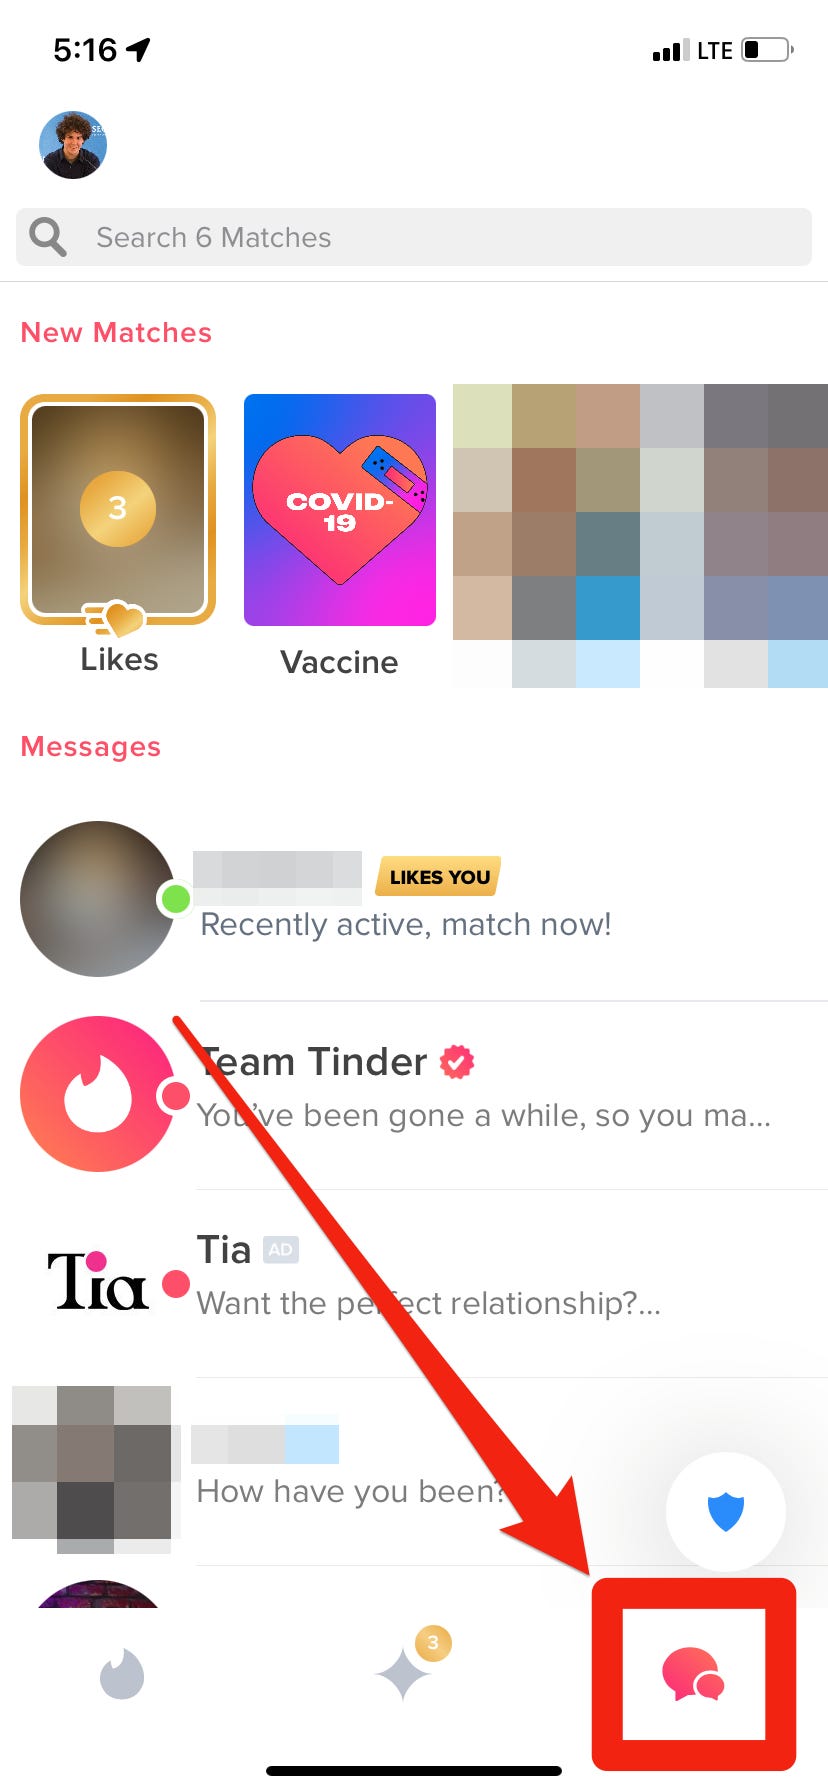 La pagina della chat di Tinder, con la sua icona nella barra degli strumenti in basso evidenziata.